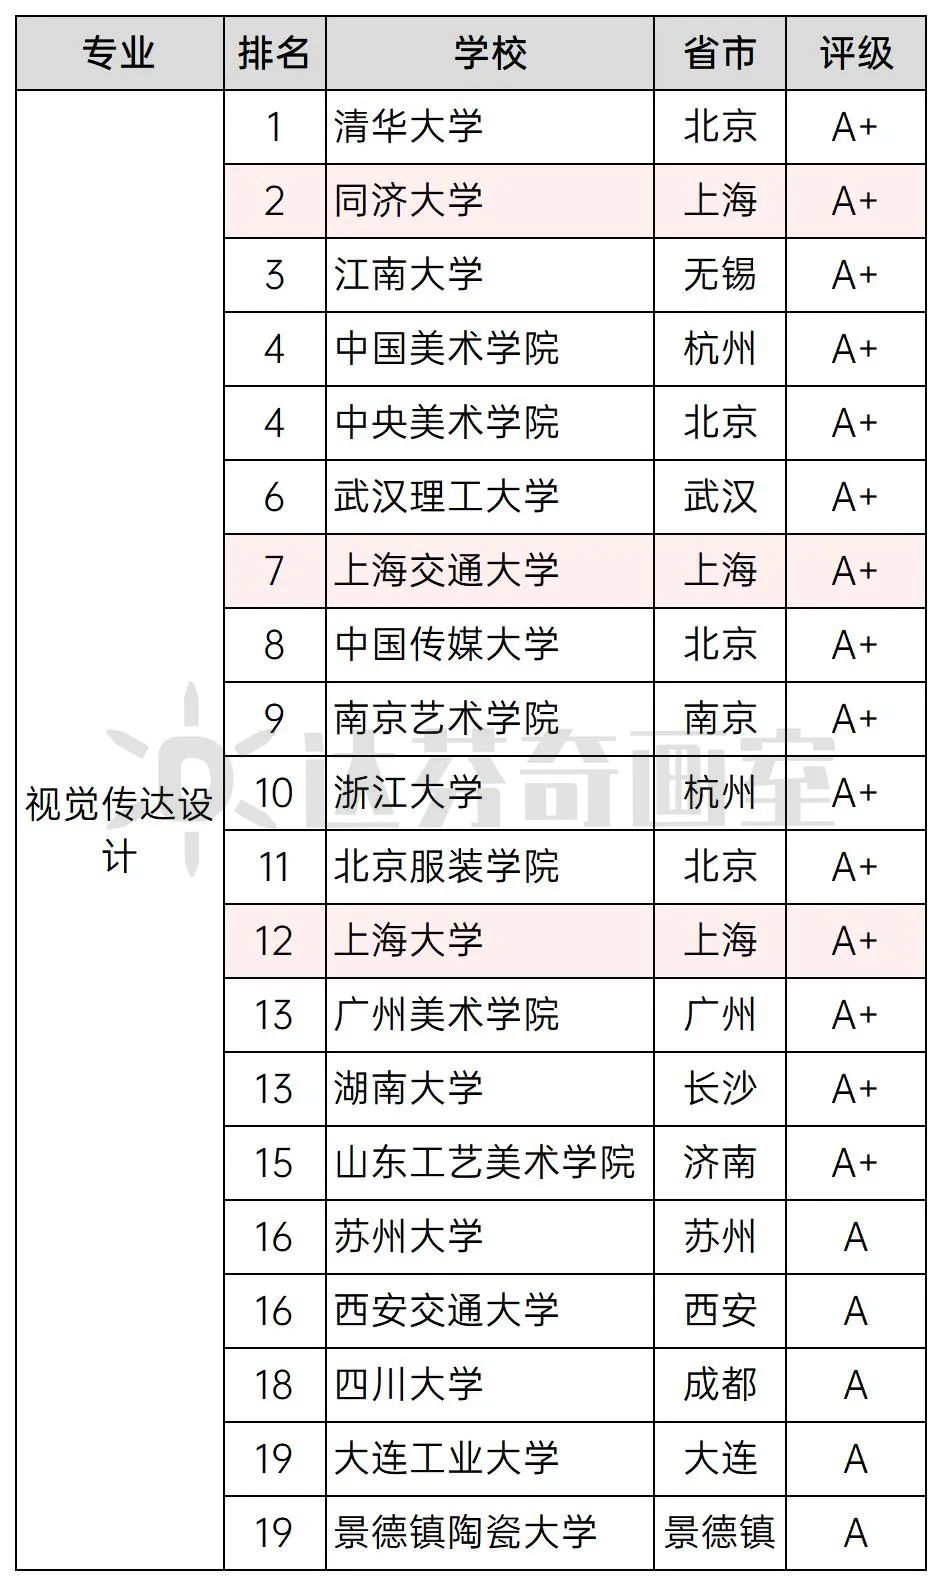 视觉传达设计同济大学排名第2，A+；上海交通大学排名第7，A+；上海大学排名第12，A+